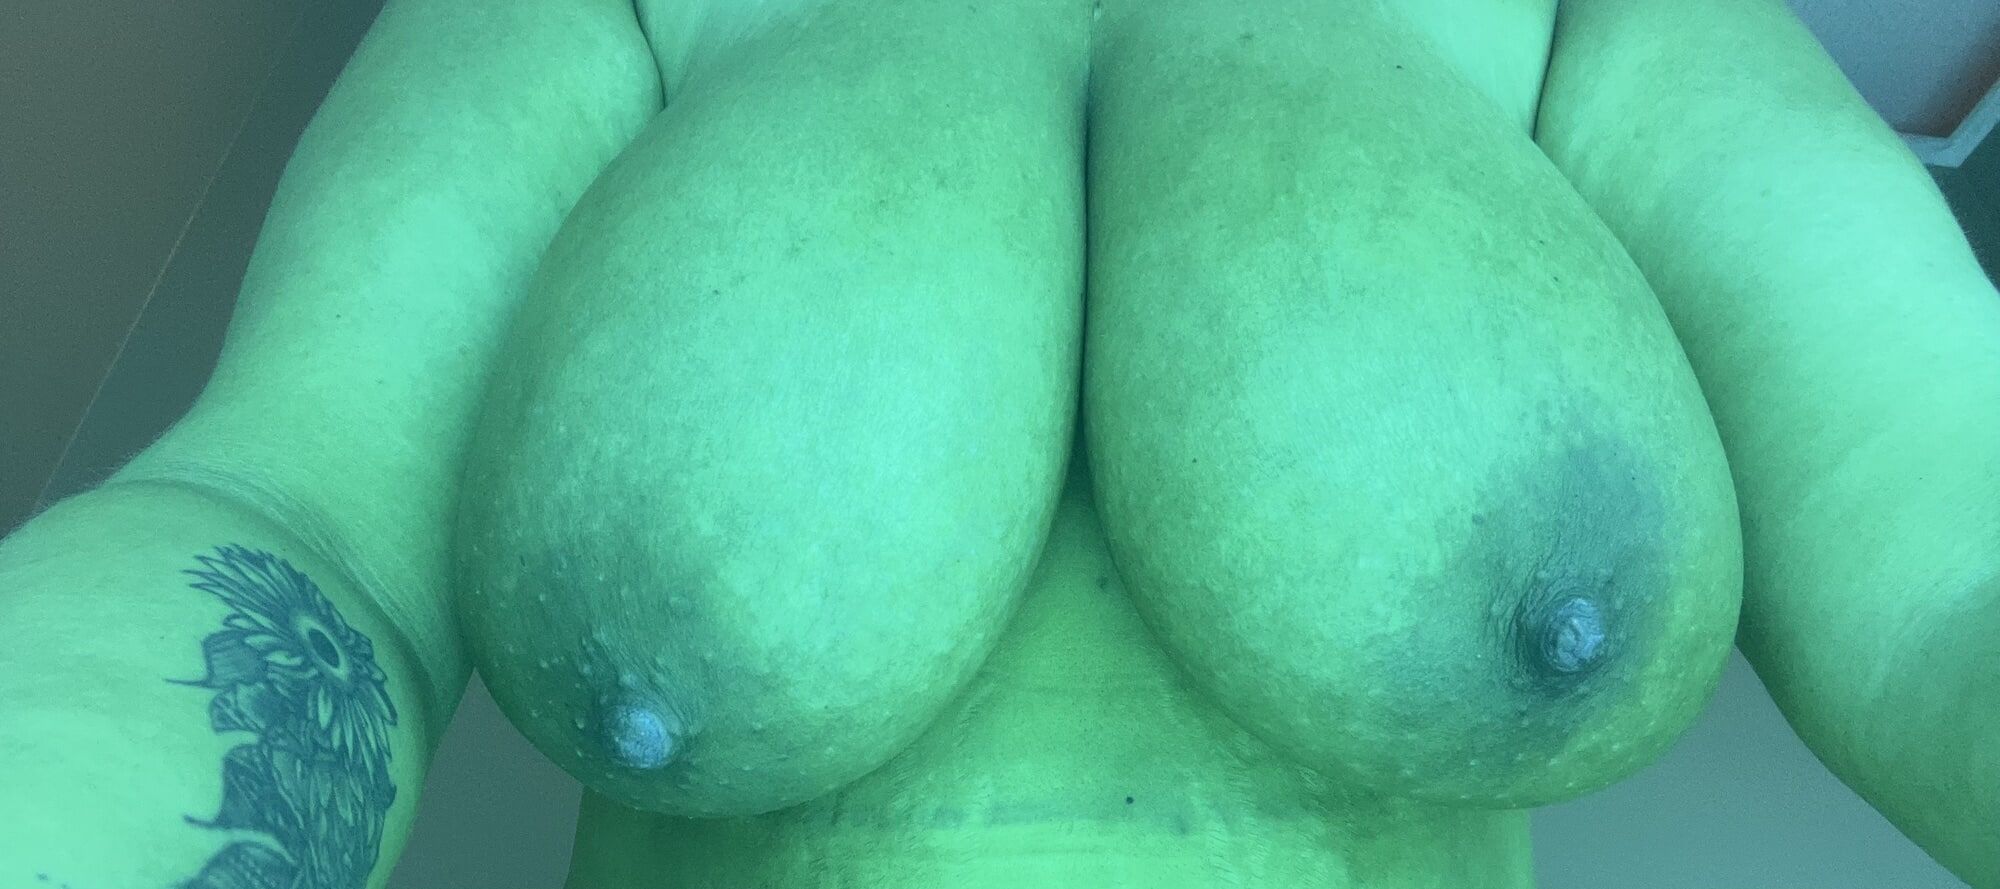 My natural tits #19